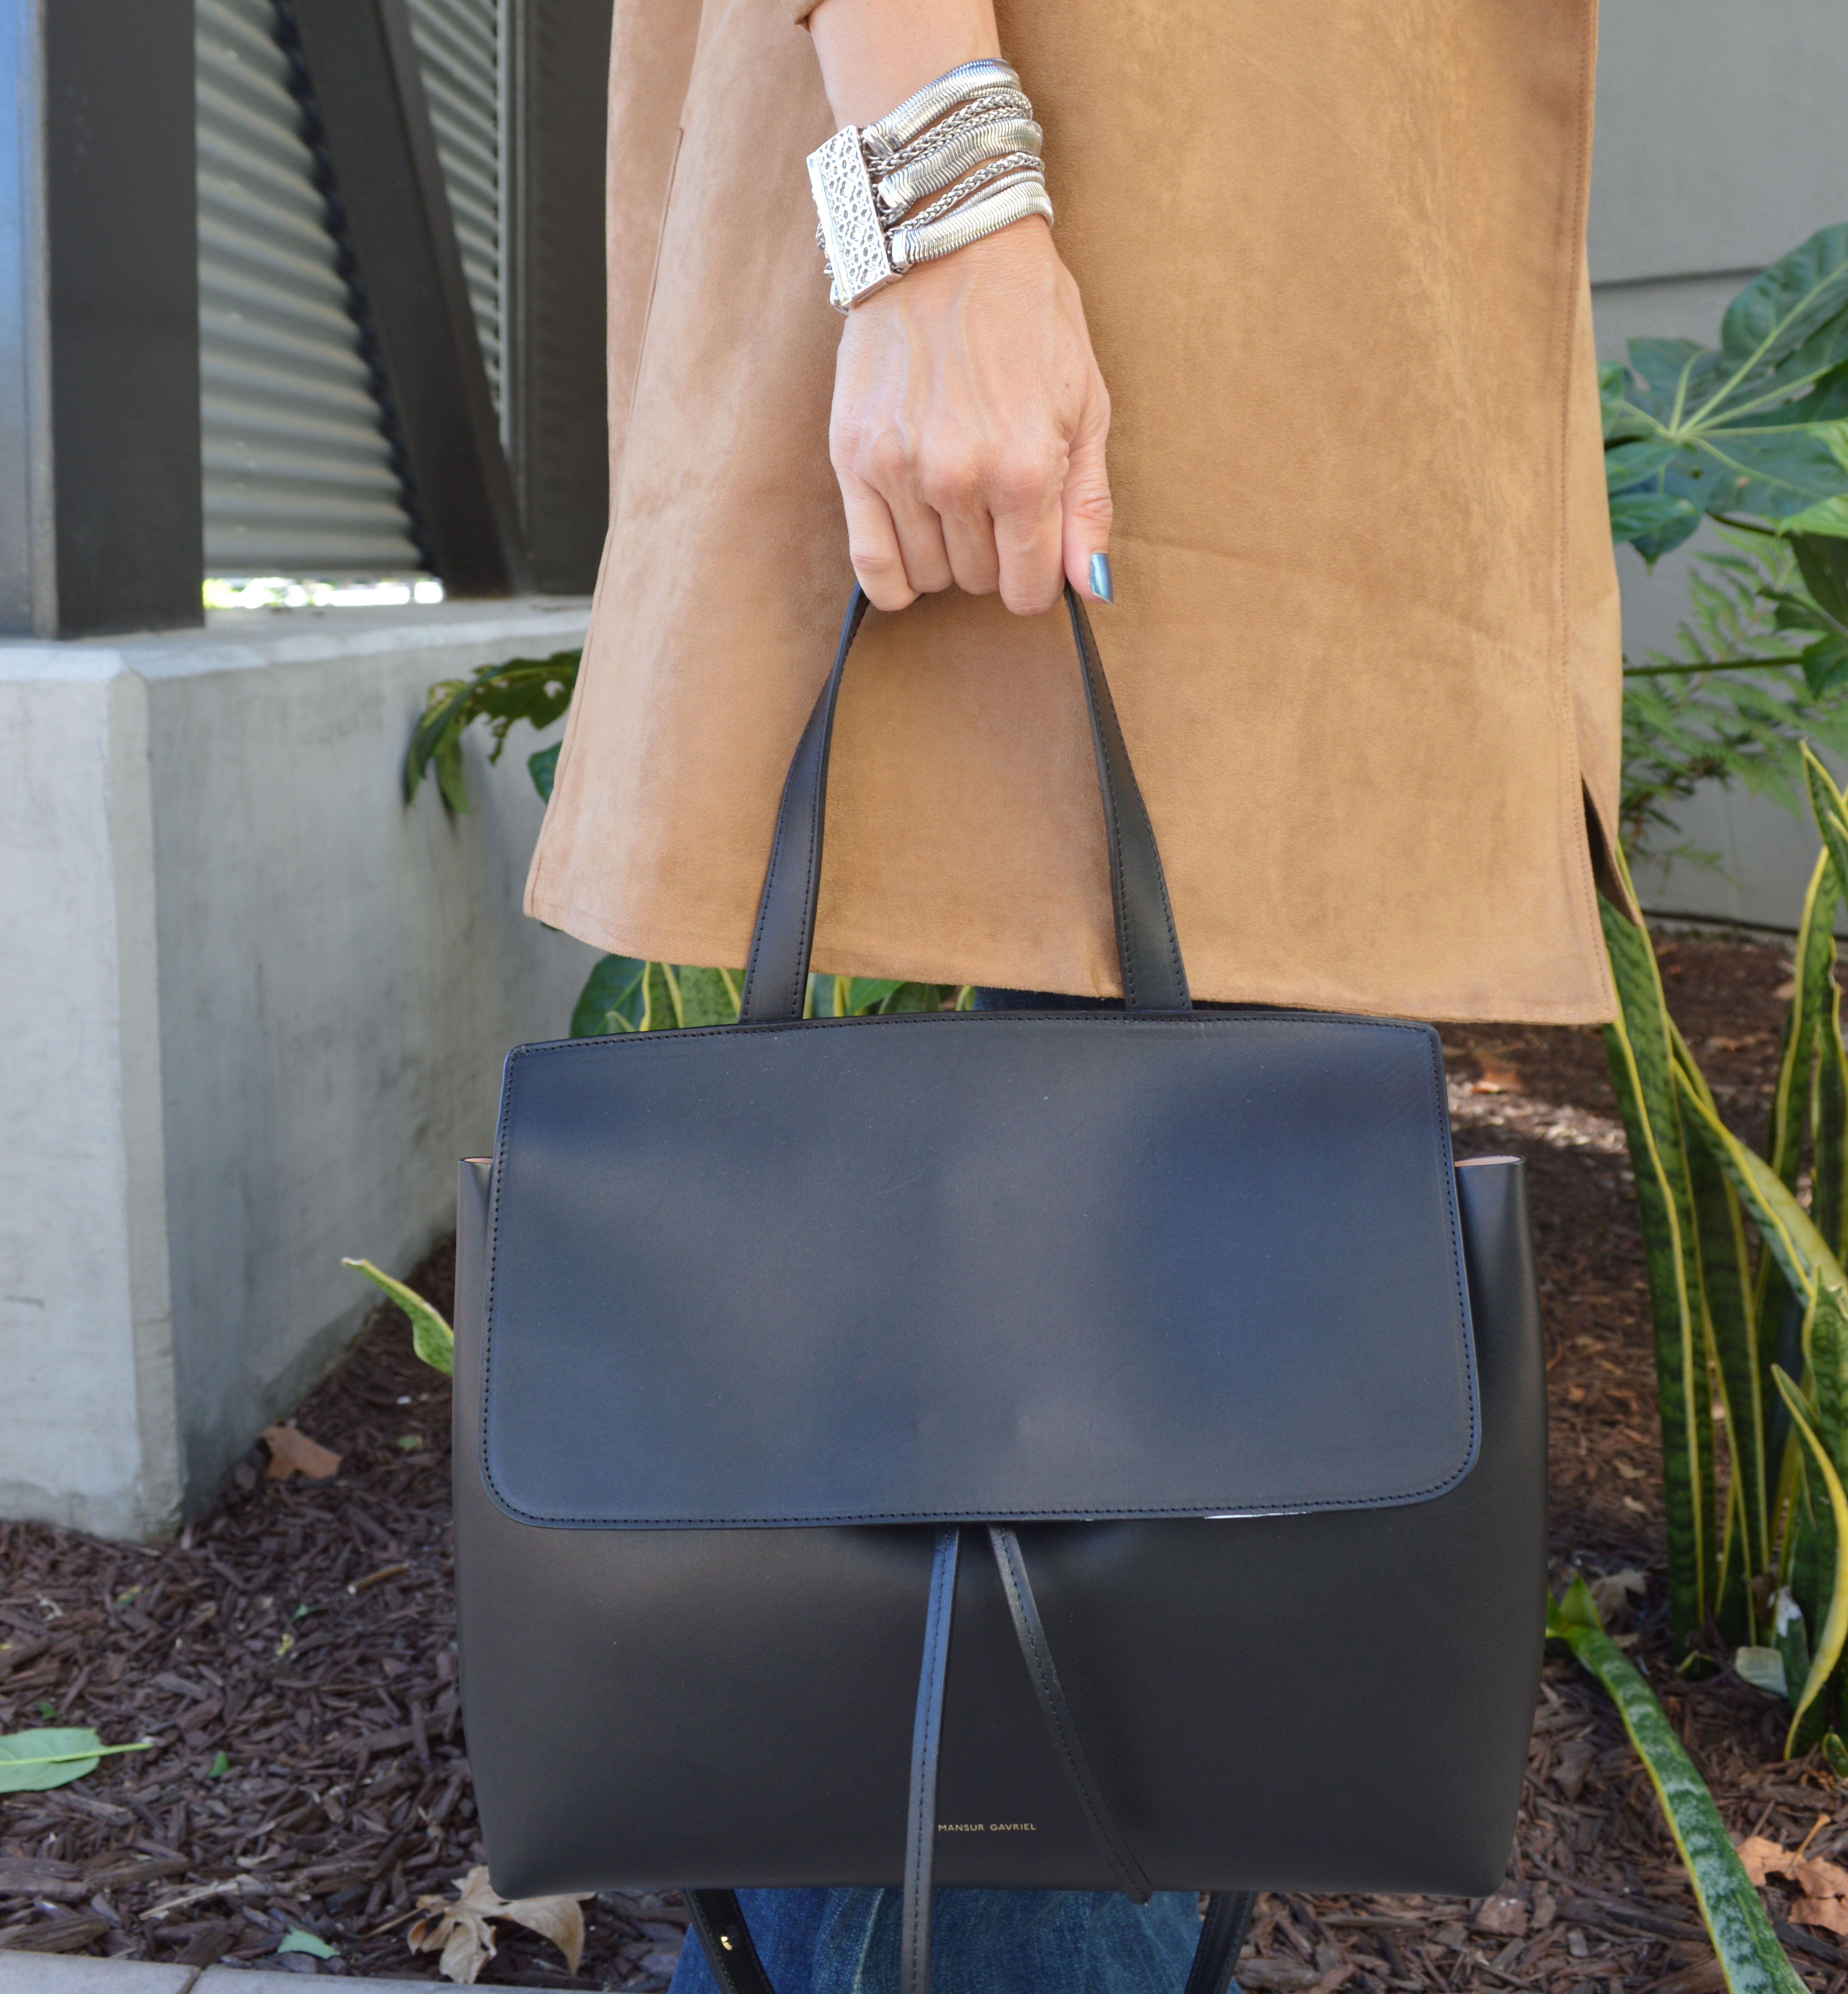 mansur gavriel small lady bag in black – Bay Area Fashionista